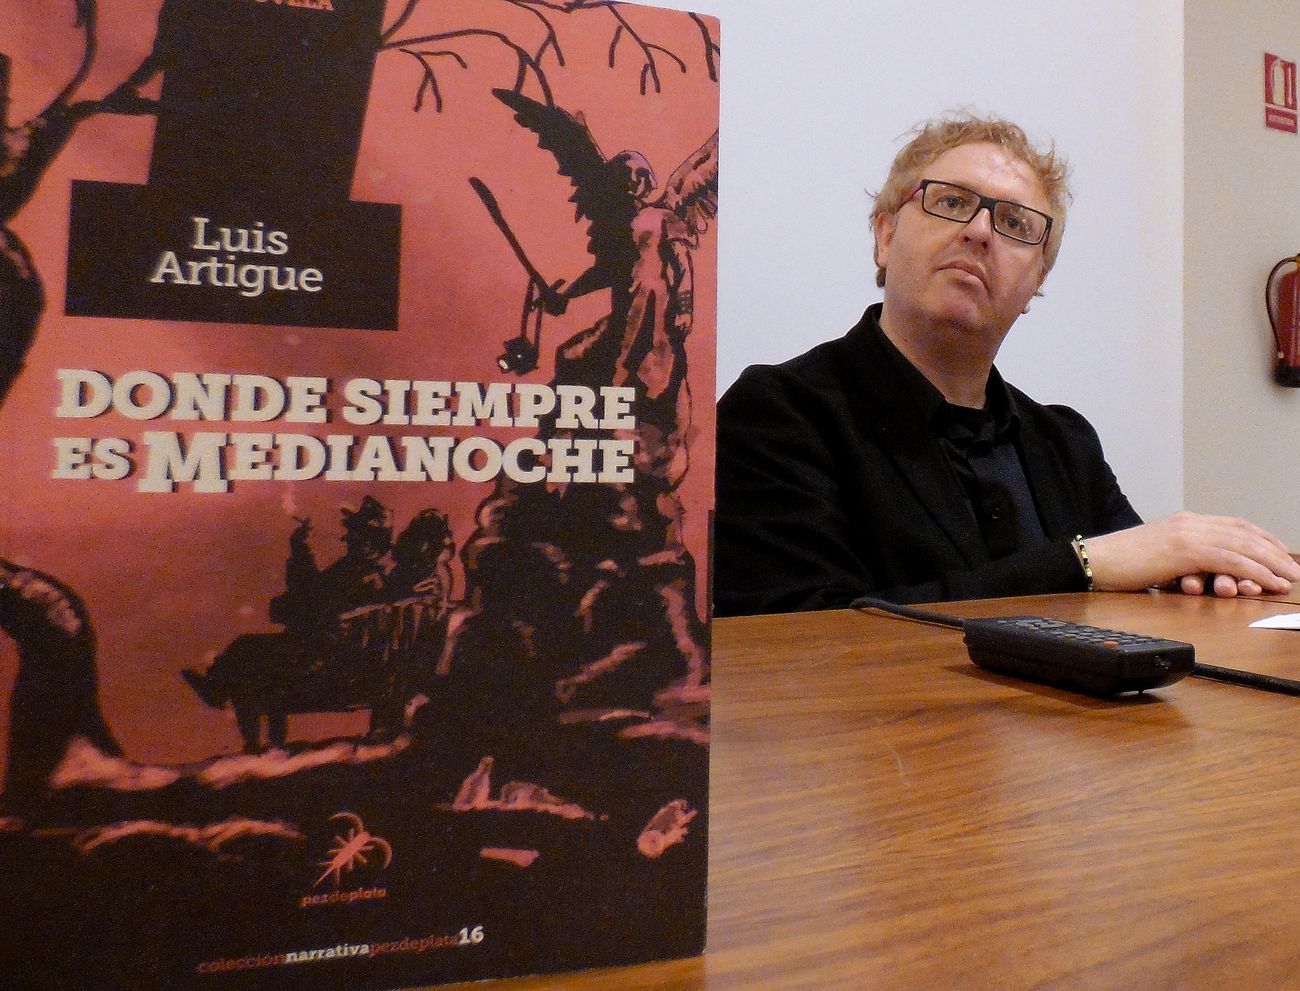 Luis Artigue acerca a León su última novela: 'Donde siempre es medianoche'